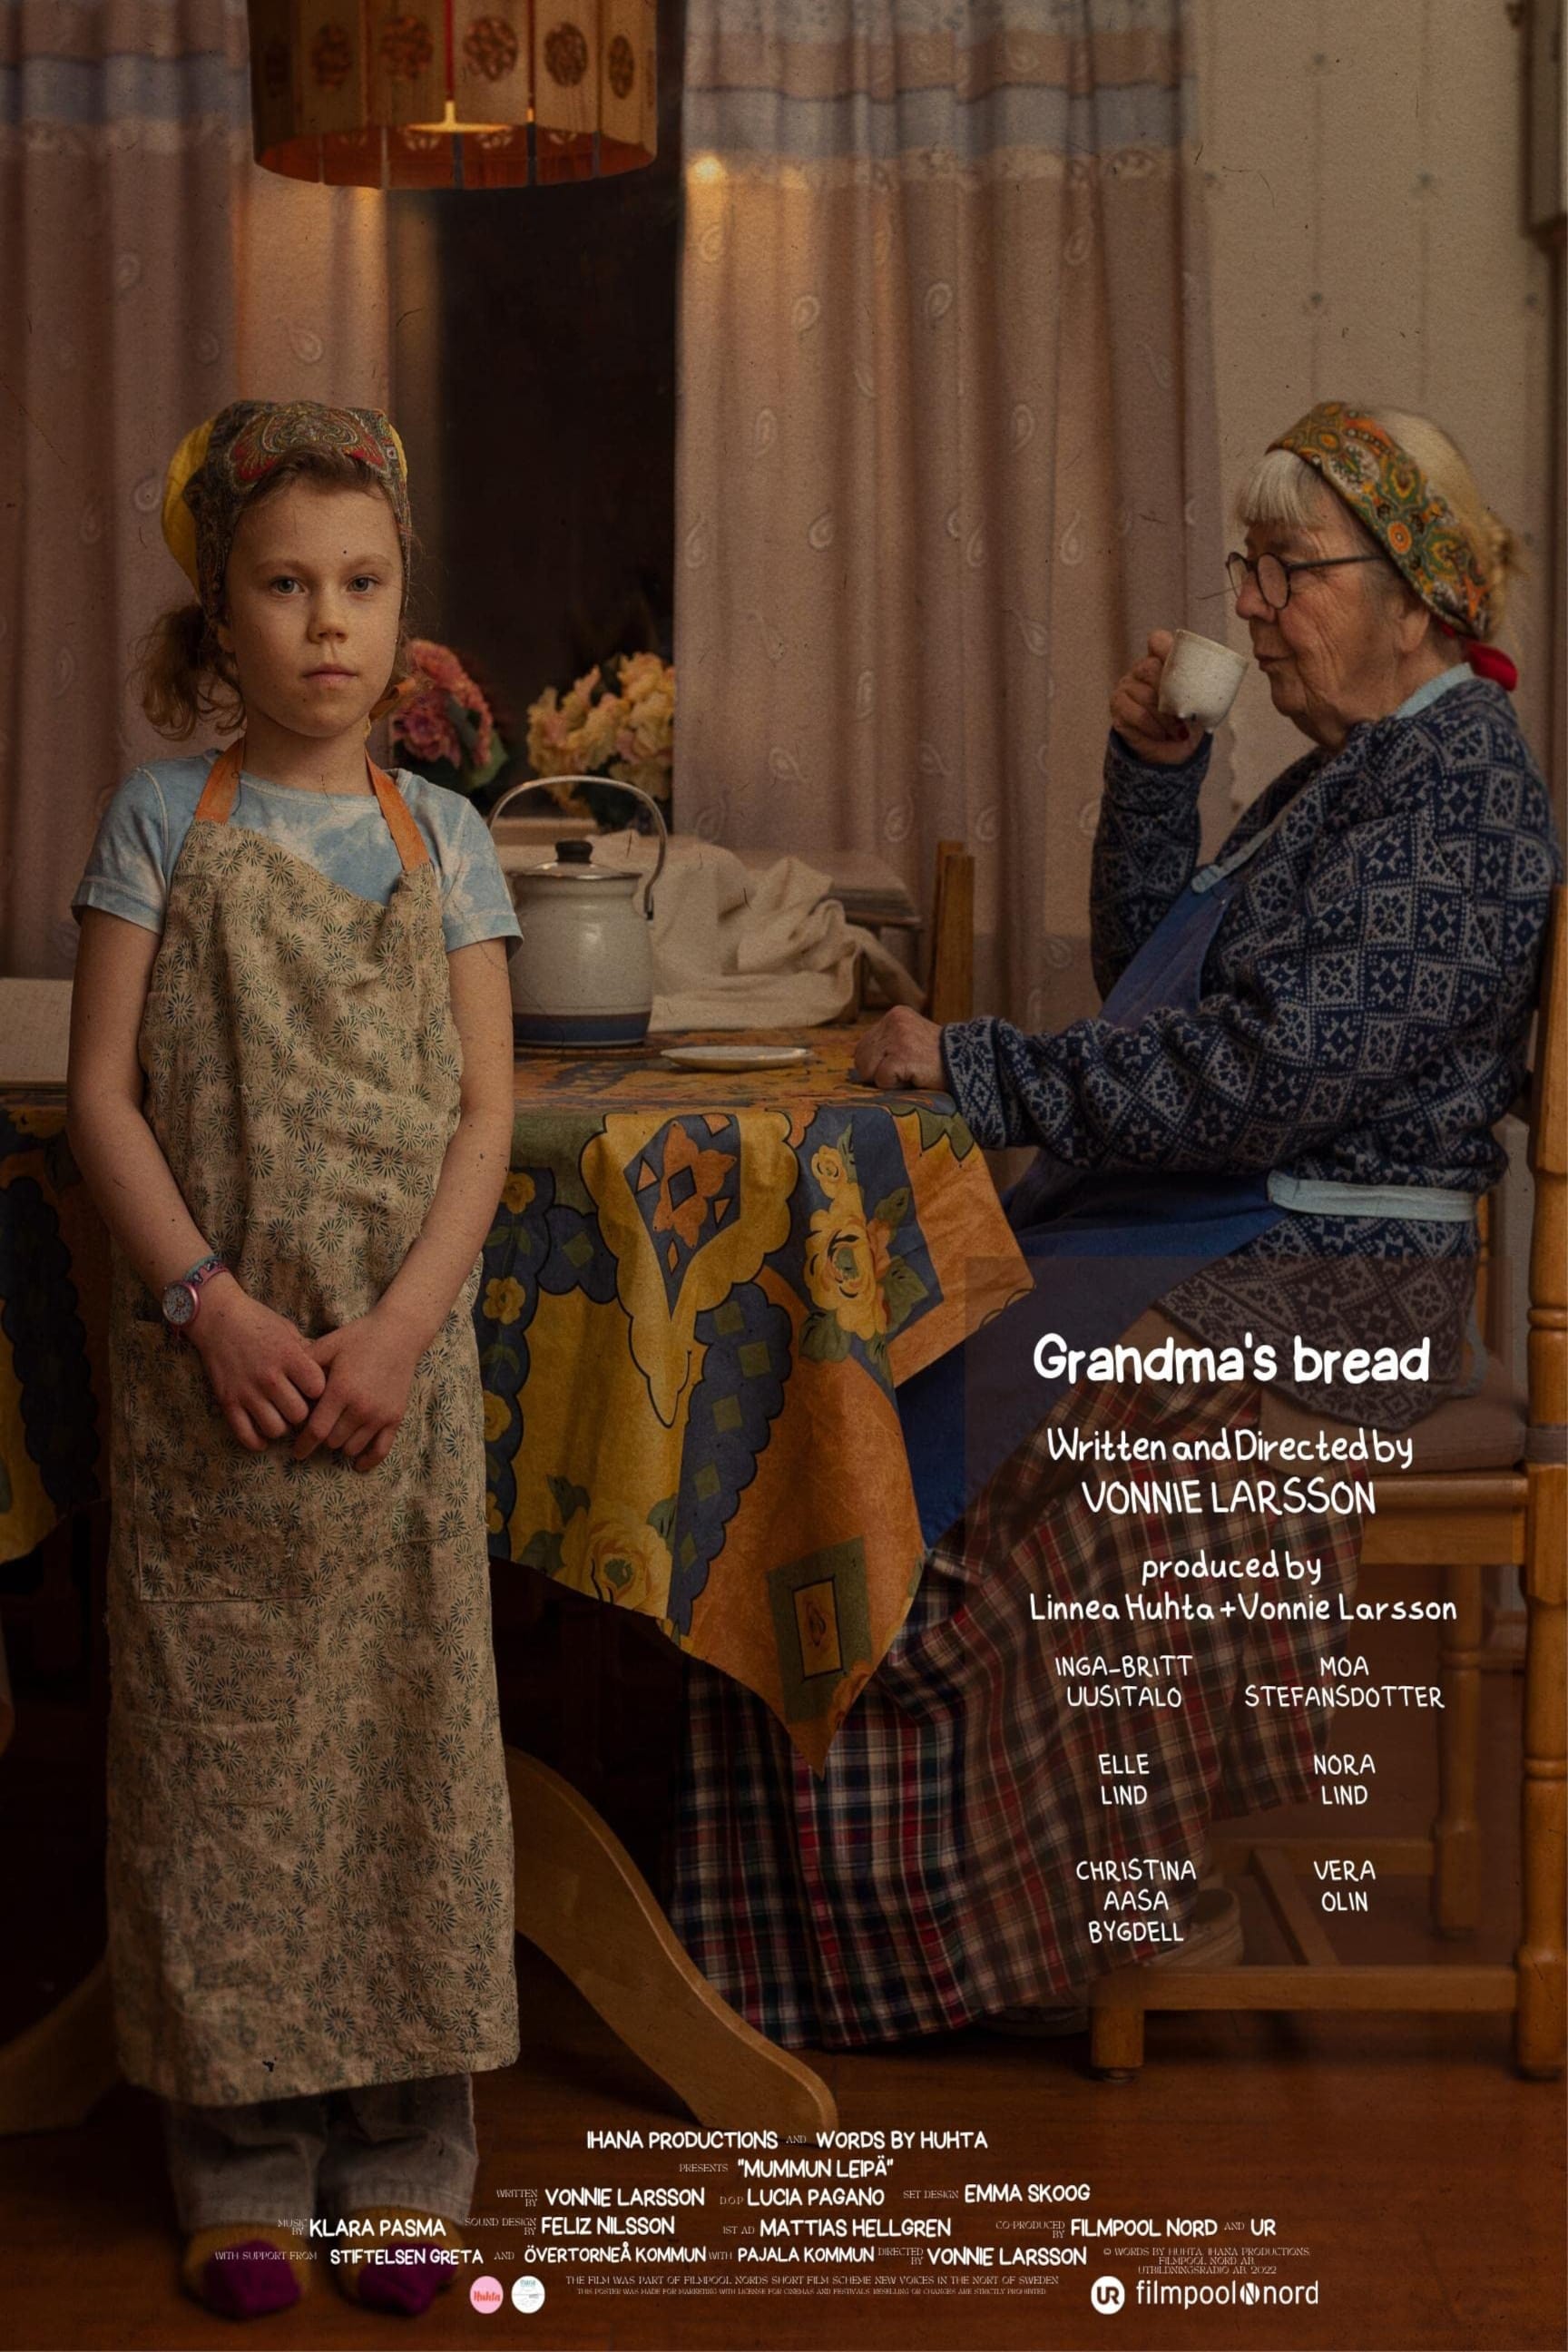 Grandma's bread